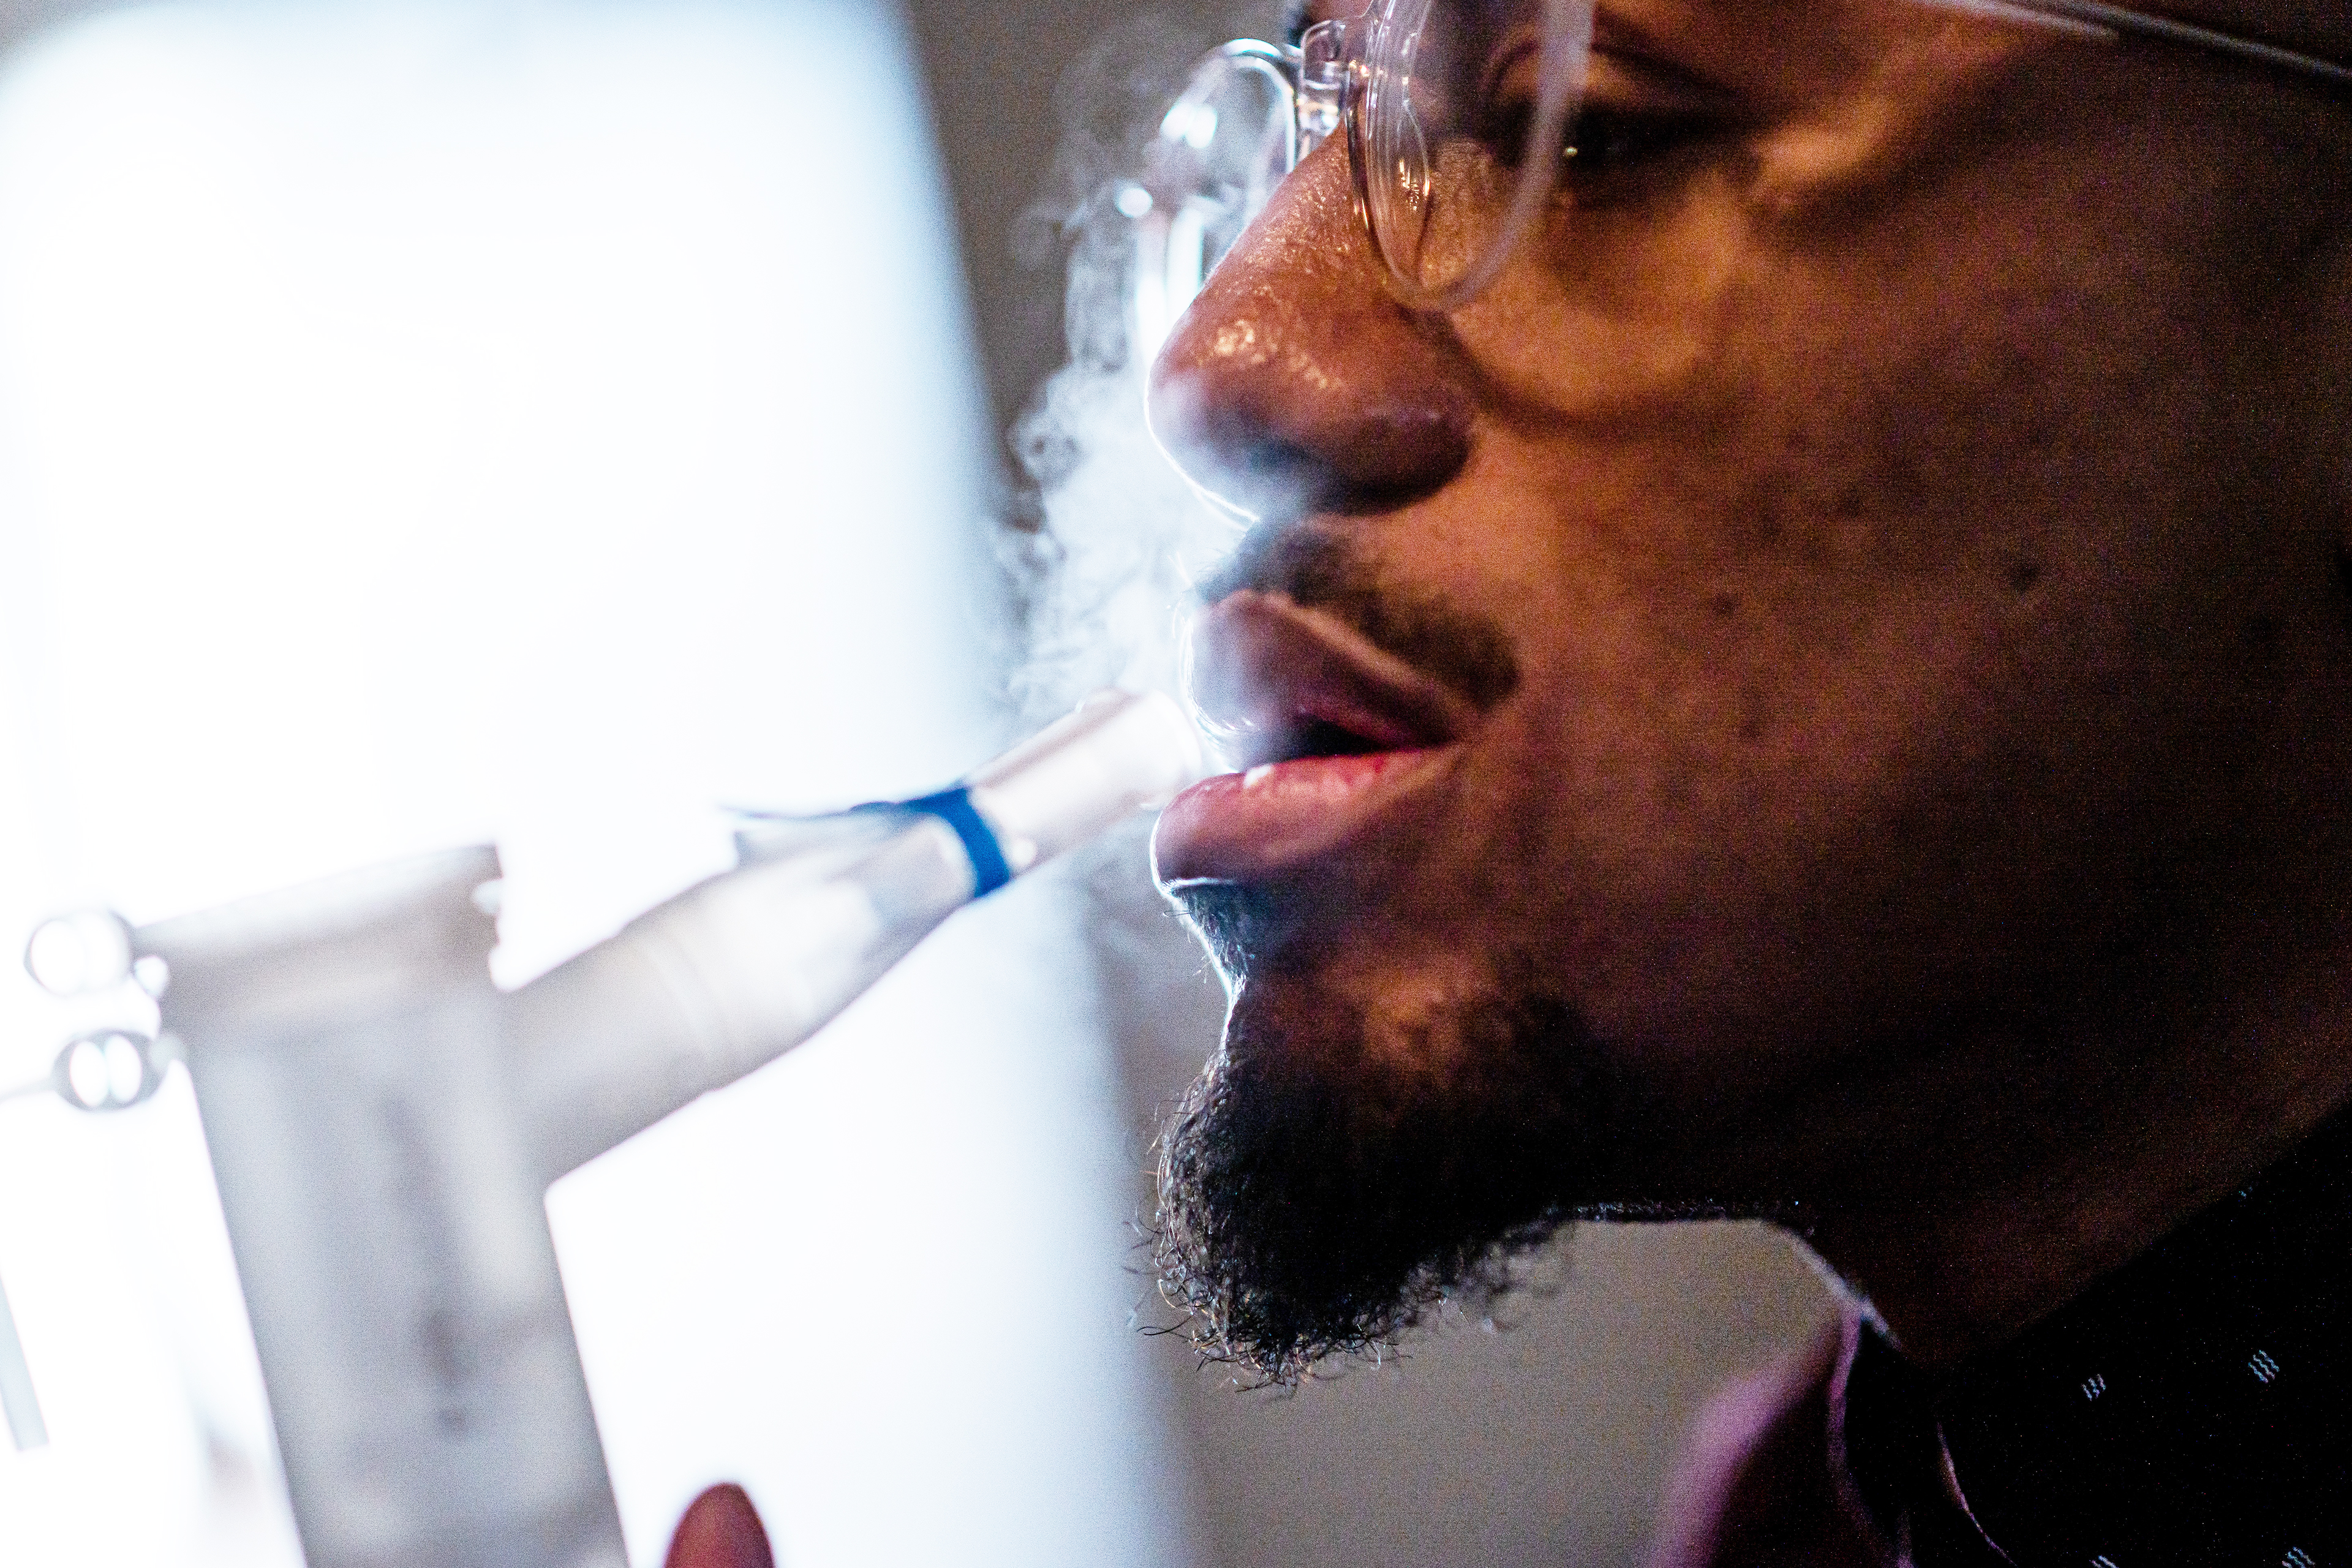 نبولایزر دارویی را اسپری می کند که نیکلاس کلی، که در تصویر نمایه سمت راست نشان داده شده است، از طریق یک قطعه دهانی تنفس می کند.  پنجره ای در پس زمینه ظاهر می شود که سایه ای دراماتیک ایجاد می کند.